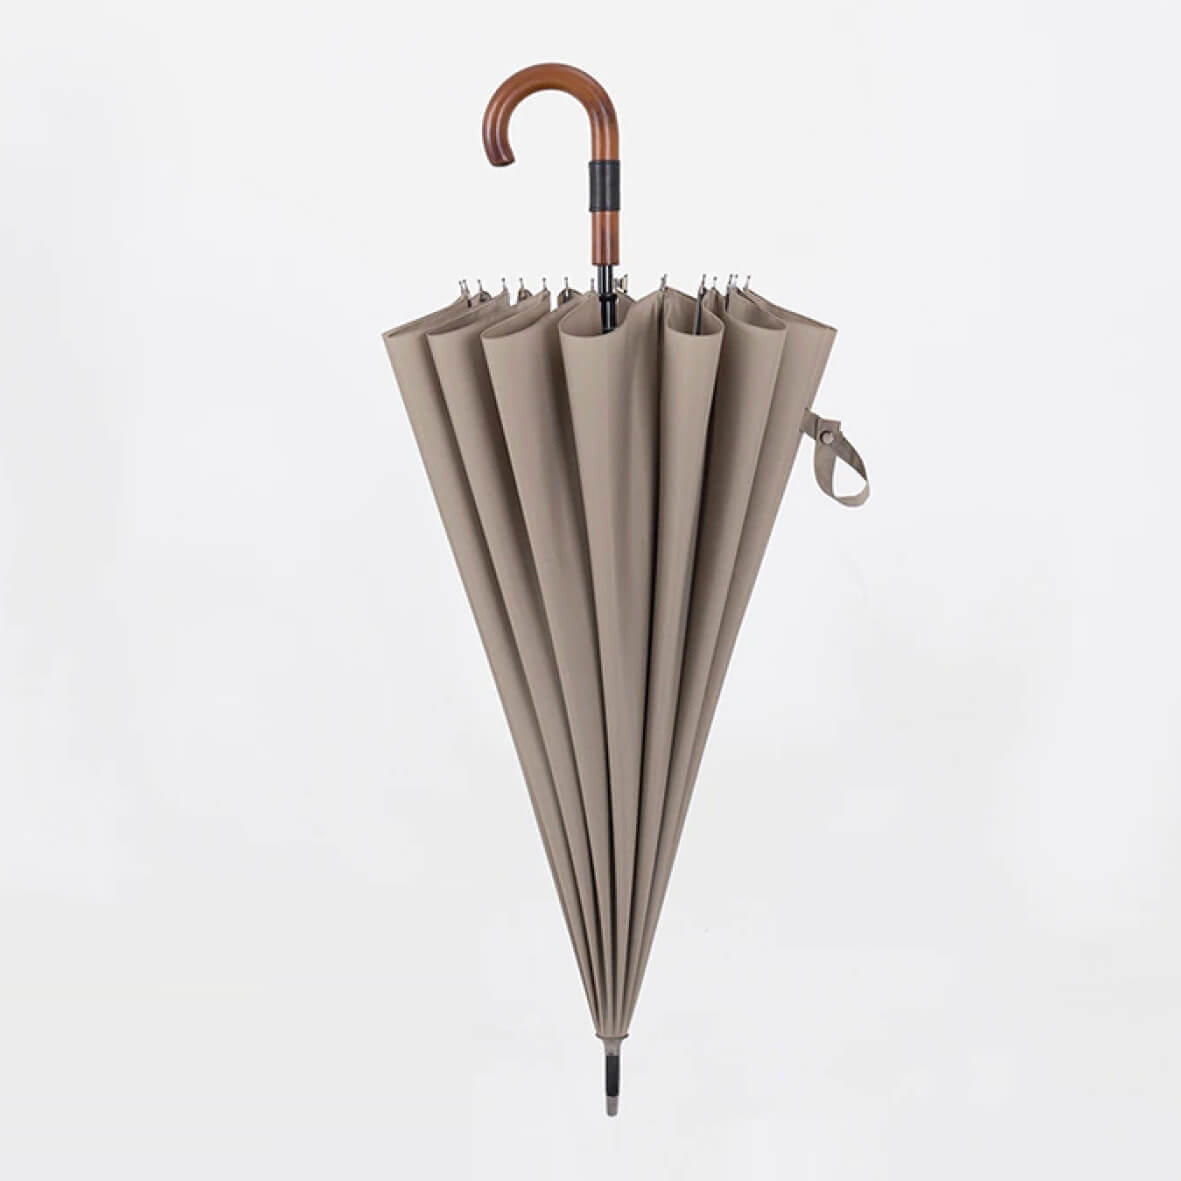 Stylish oversized umbrella with wooden handle